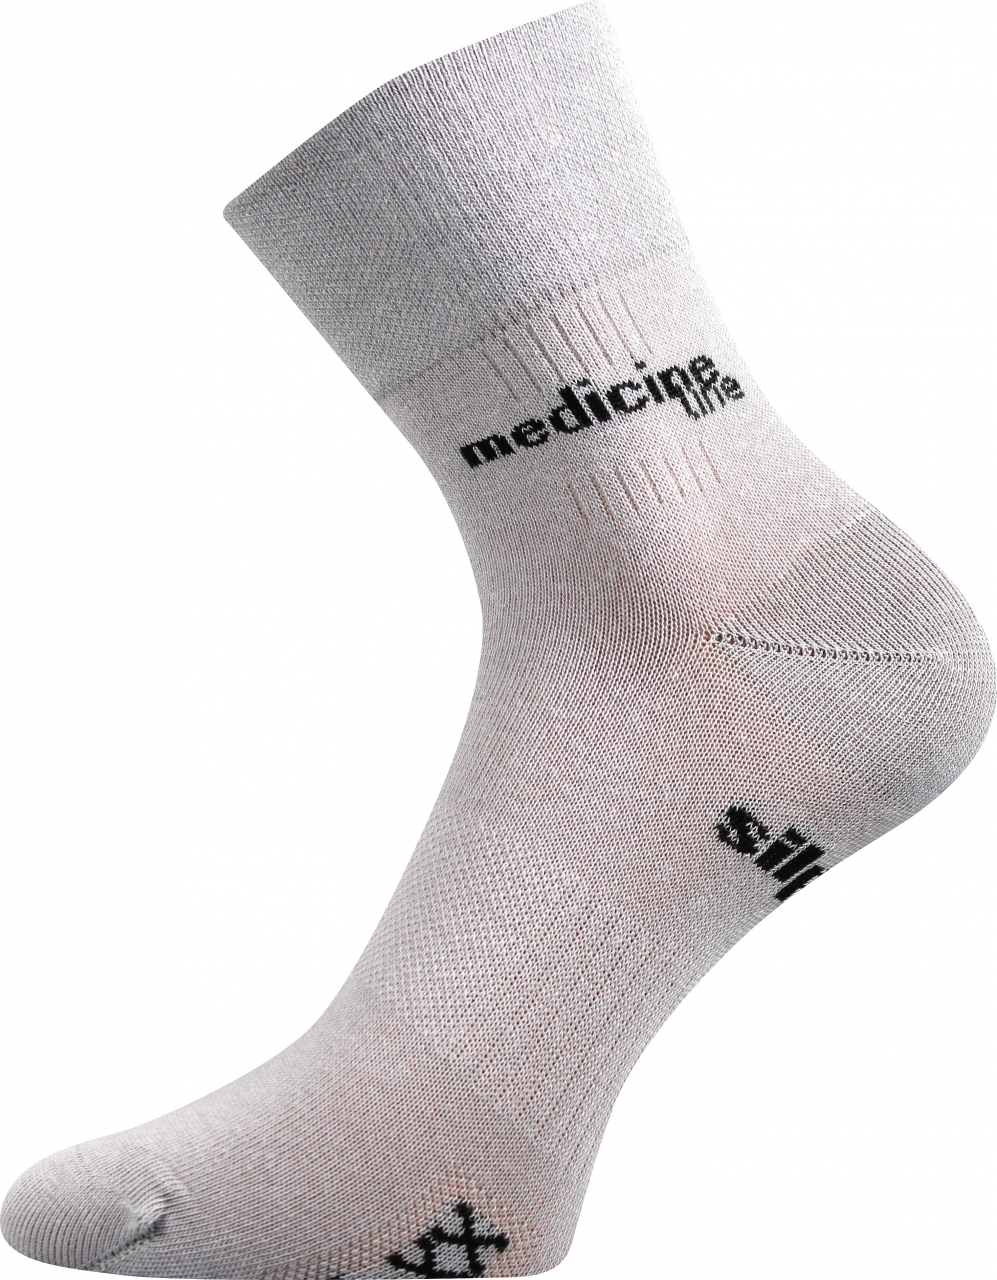 Ponožky zdravotní Mission Medicine - světle šedé, 47-50